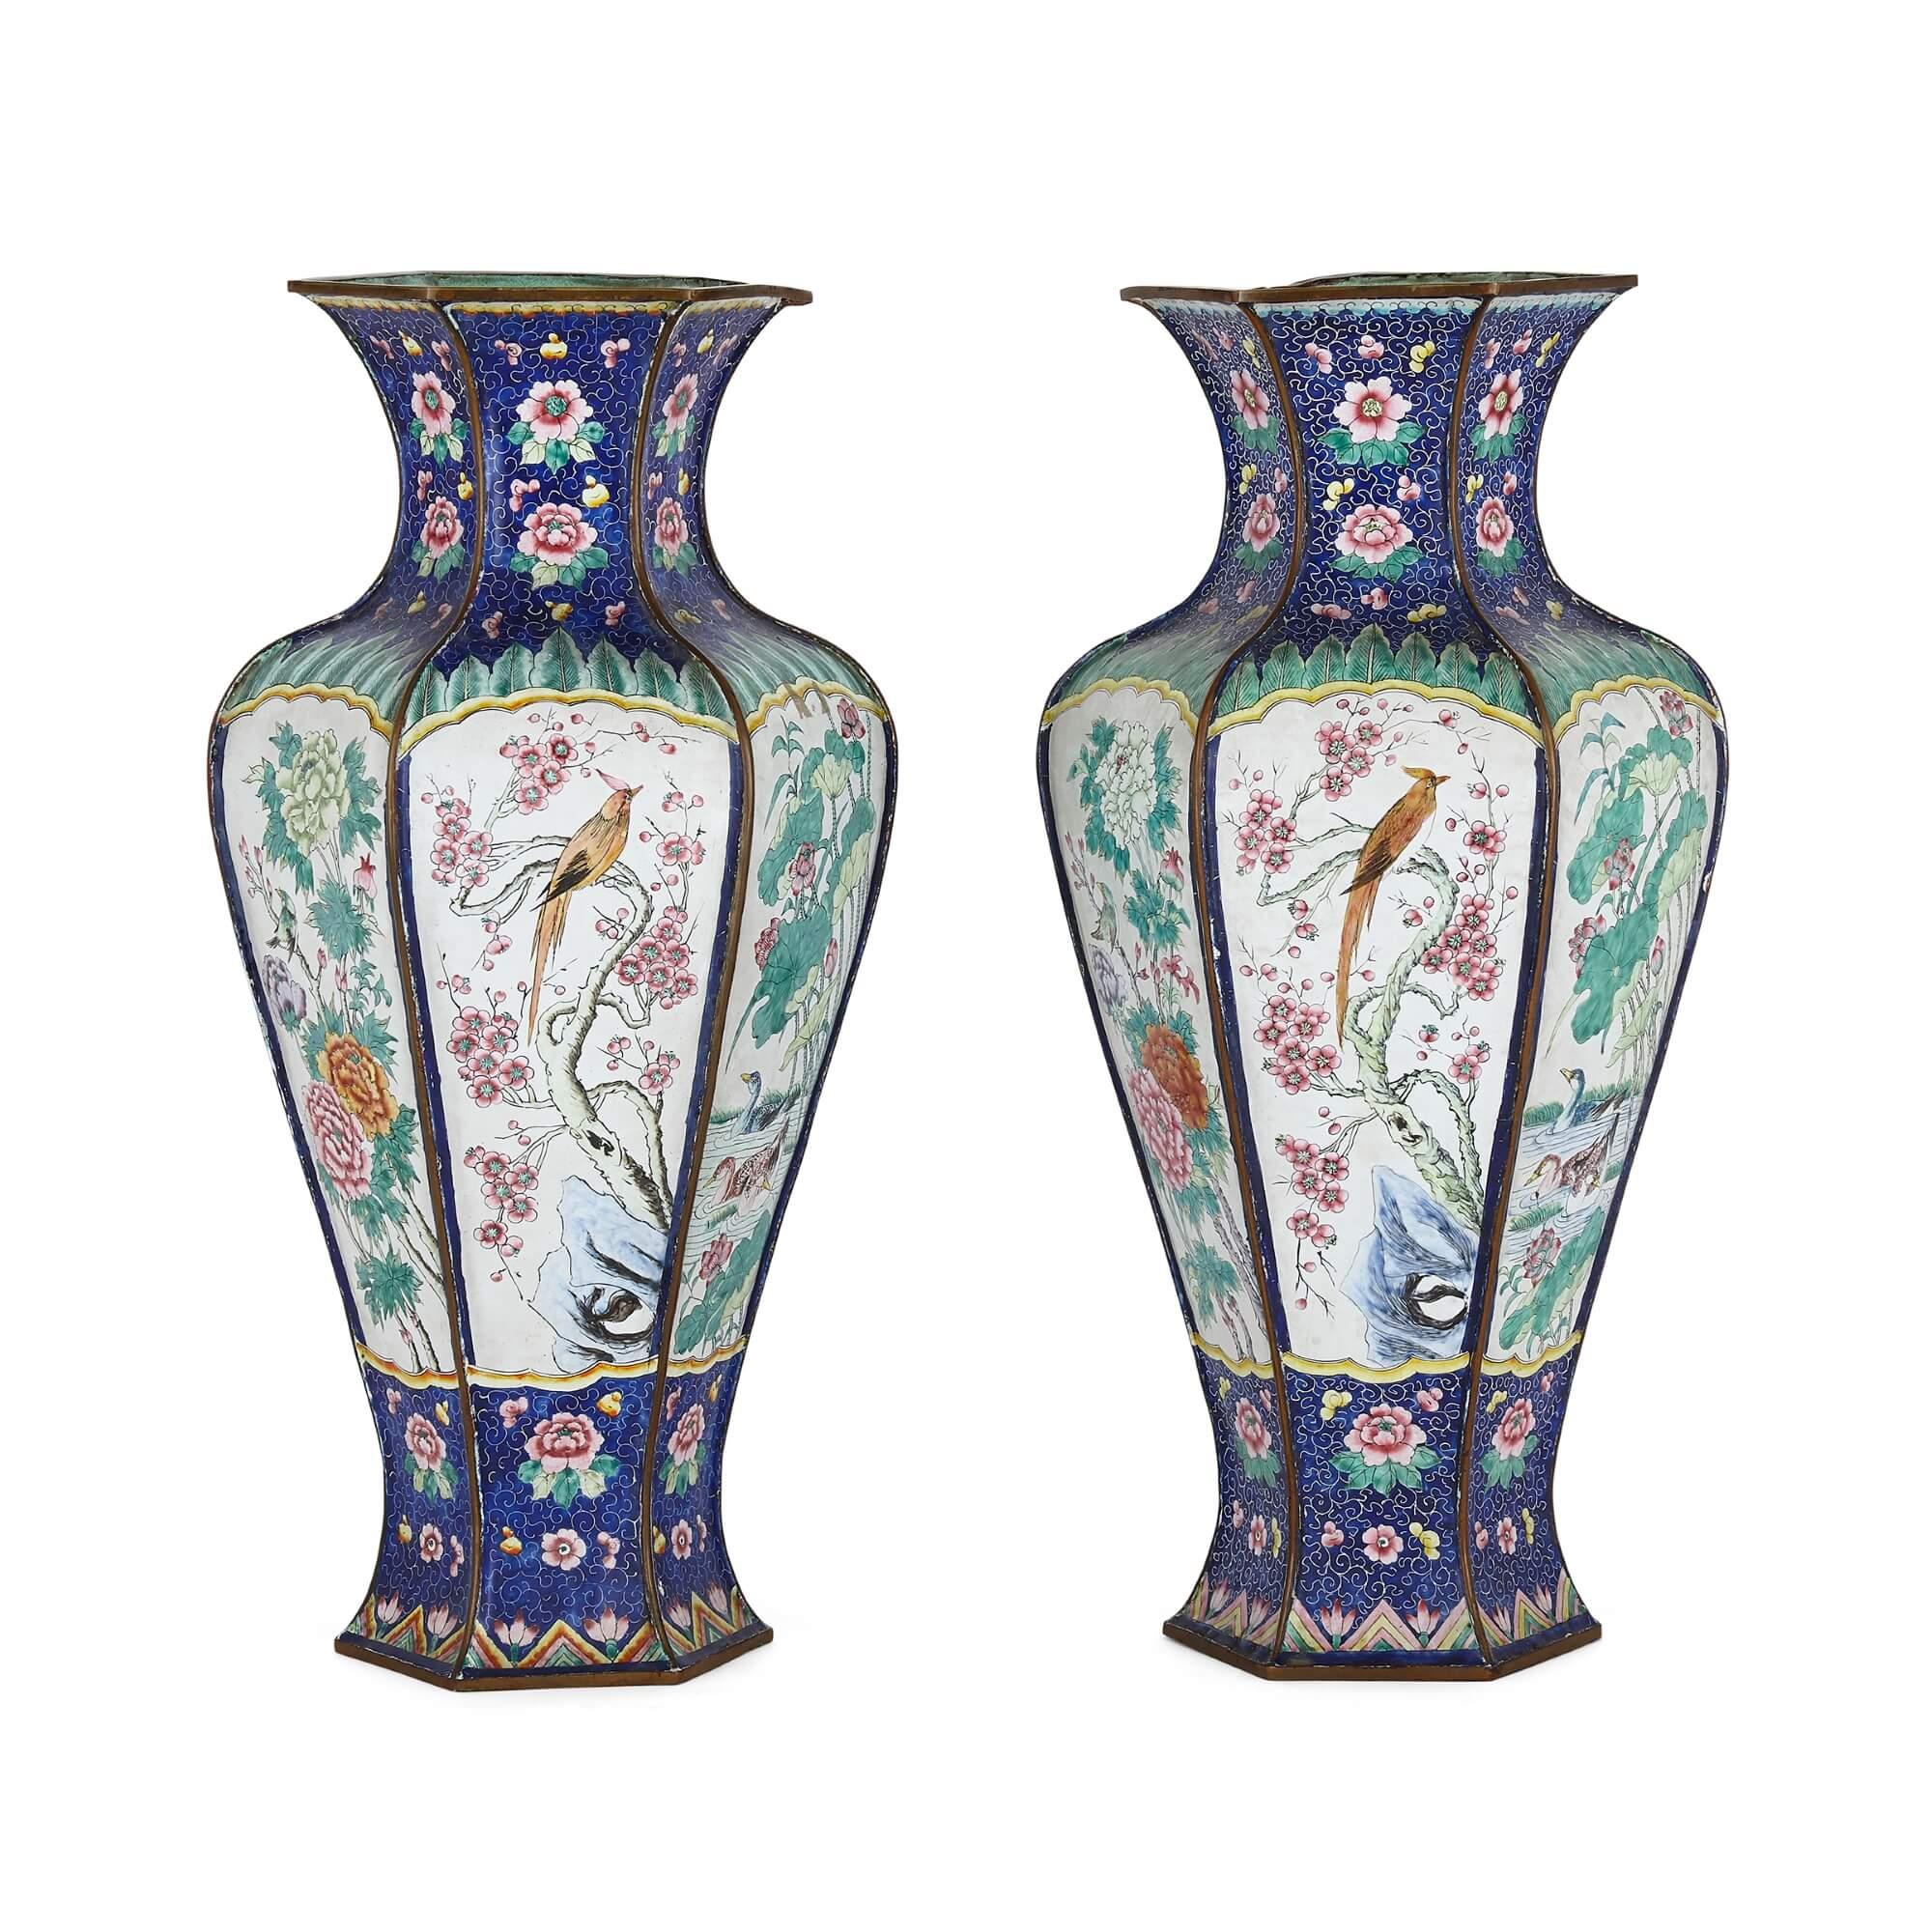 Paire de vases en émail chinois
Chinois, 19ème siècle
Hauteur 38 cm, diamètre 19 cm

Ces charmants vases chinois sont fabriqués en émail. Chaque vase présente un corps bulbeux avec un pied évasé et un col cintré menant à un large rebord. Le corps de